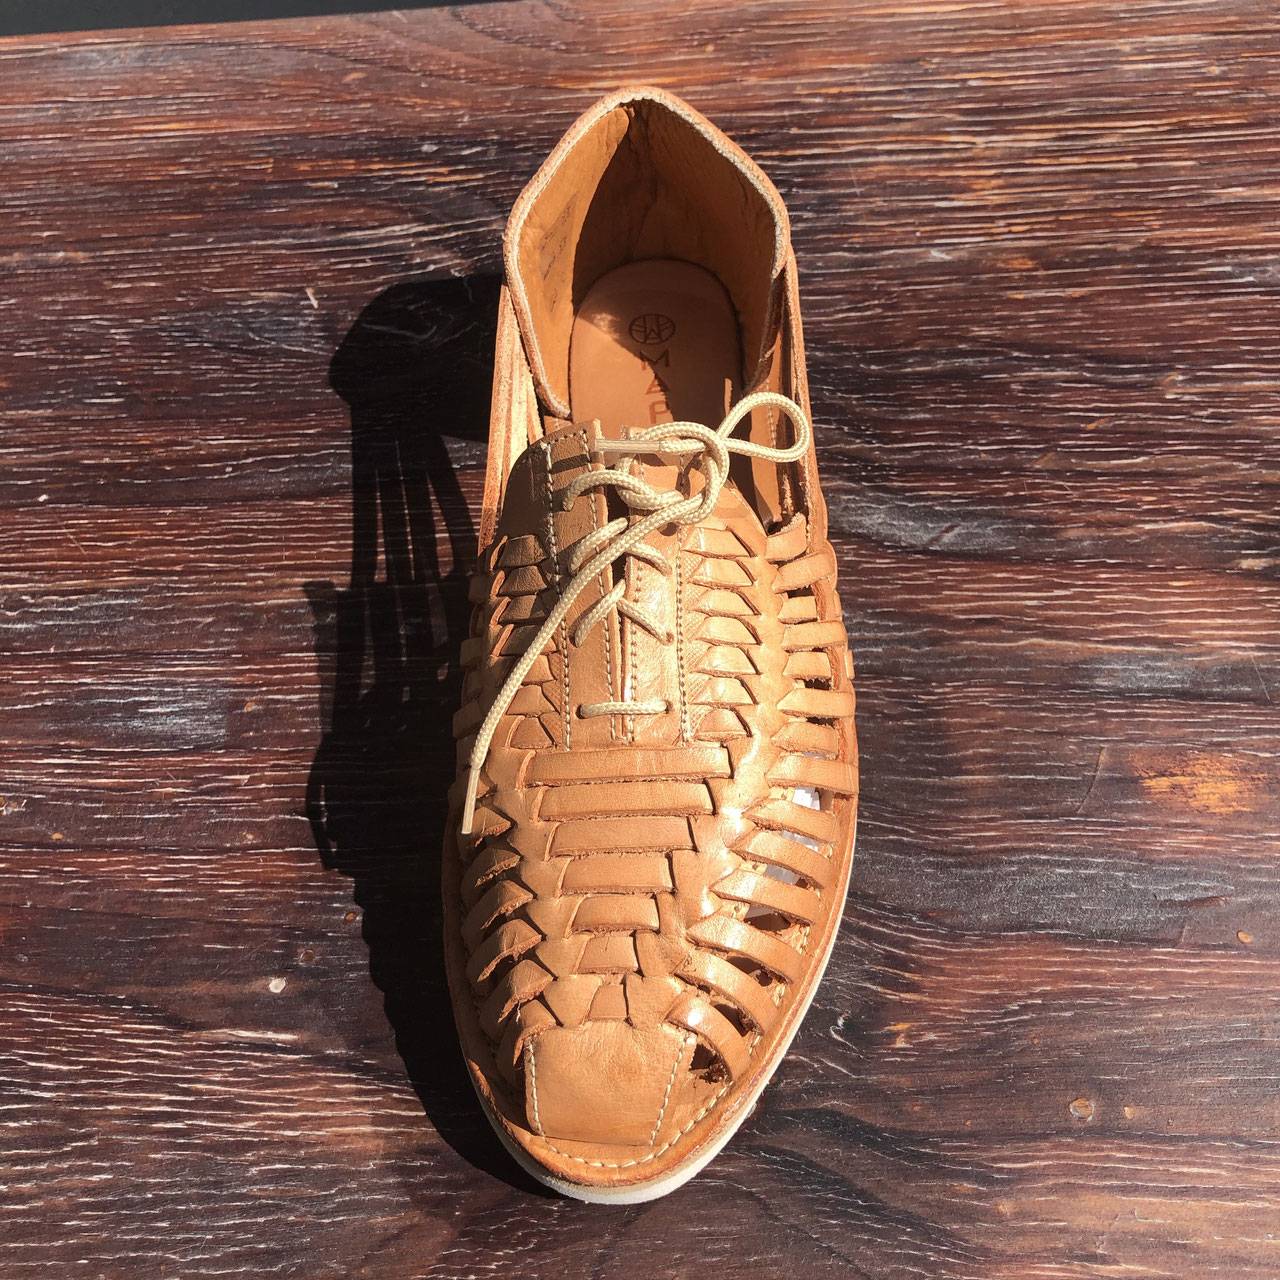 Samantha – Shoe Shoes Cassare